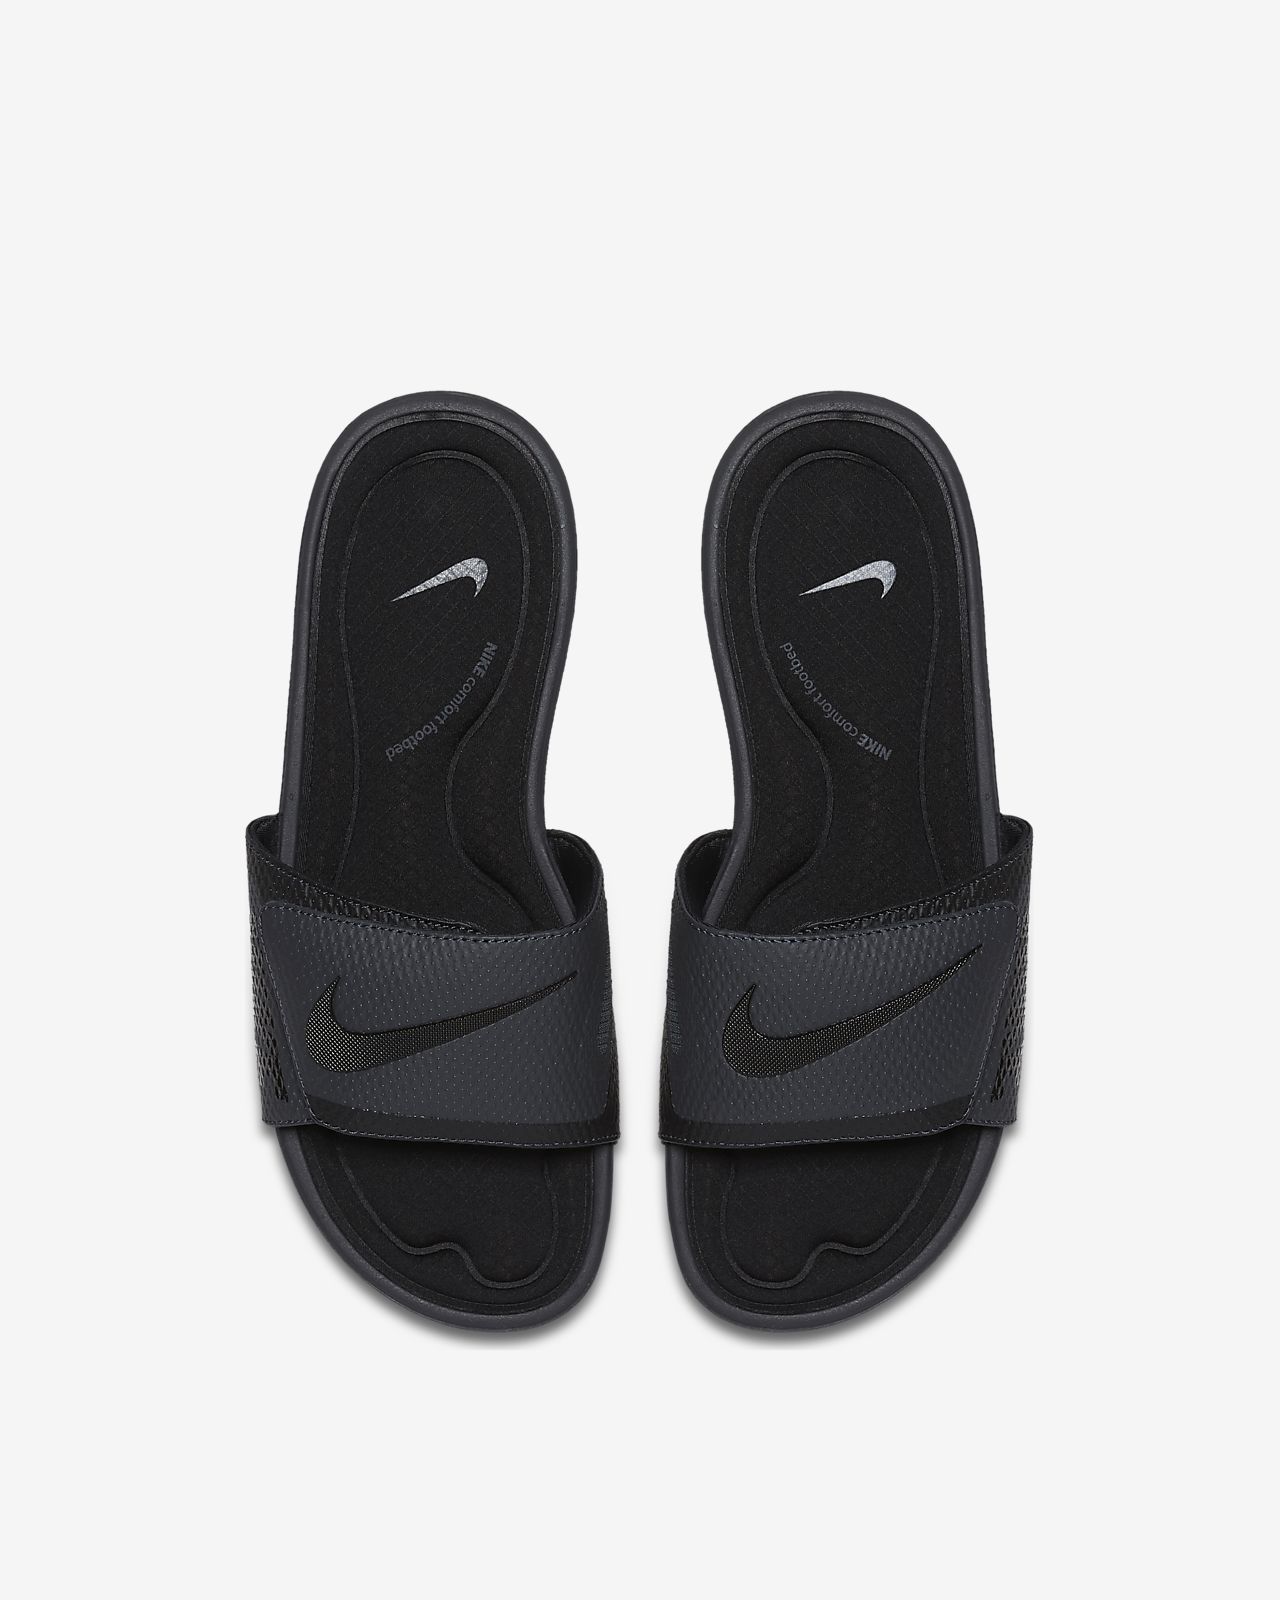 nike men's solarsoft comfort slide sandal